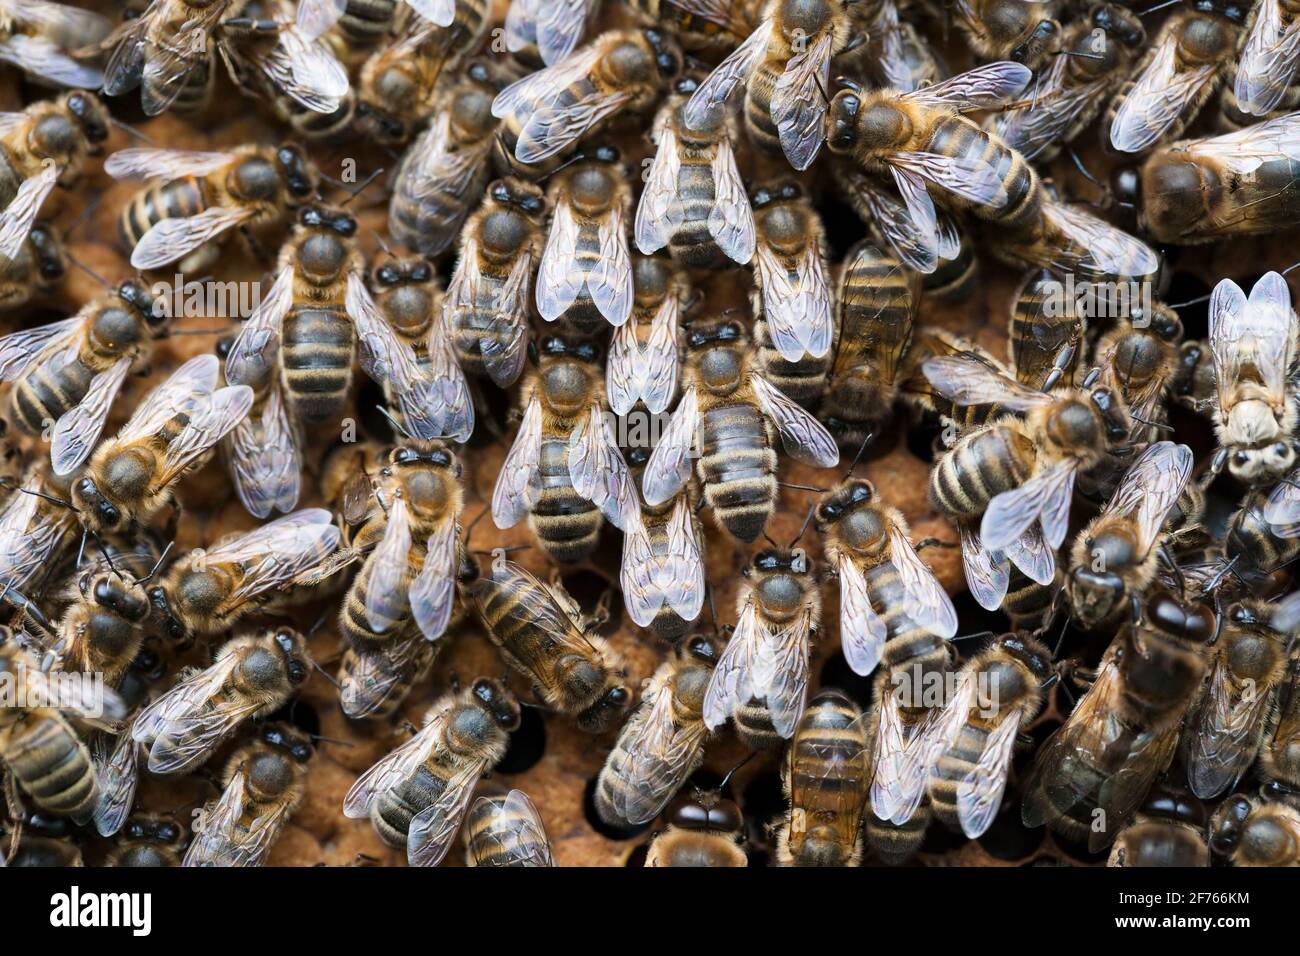 Les abeilles domestiques (APIs mellifera) travaillent sur le nid d'abeilles, au Royaume-Uni Banque D'Images